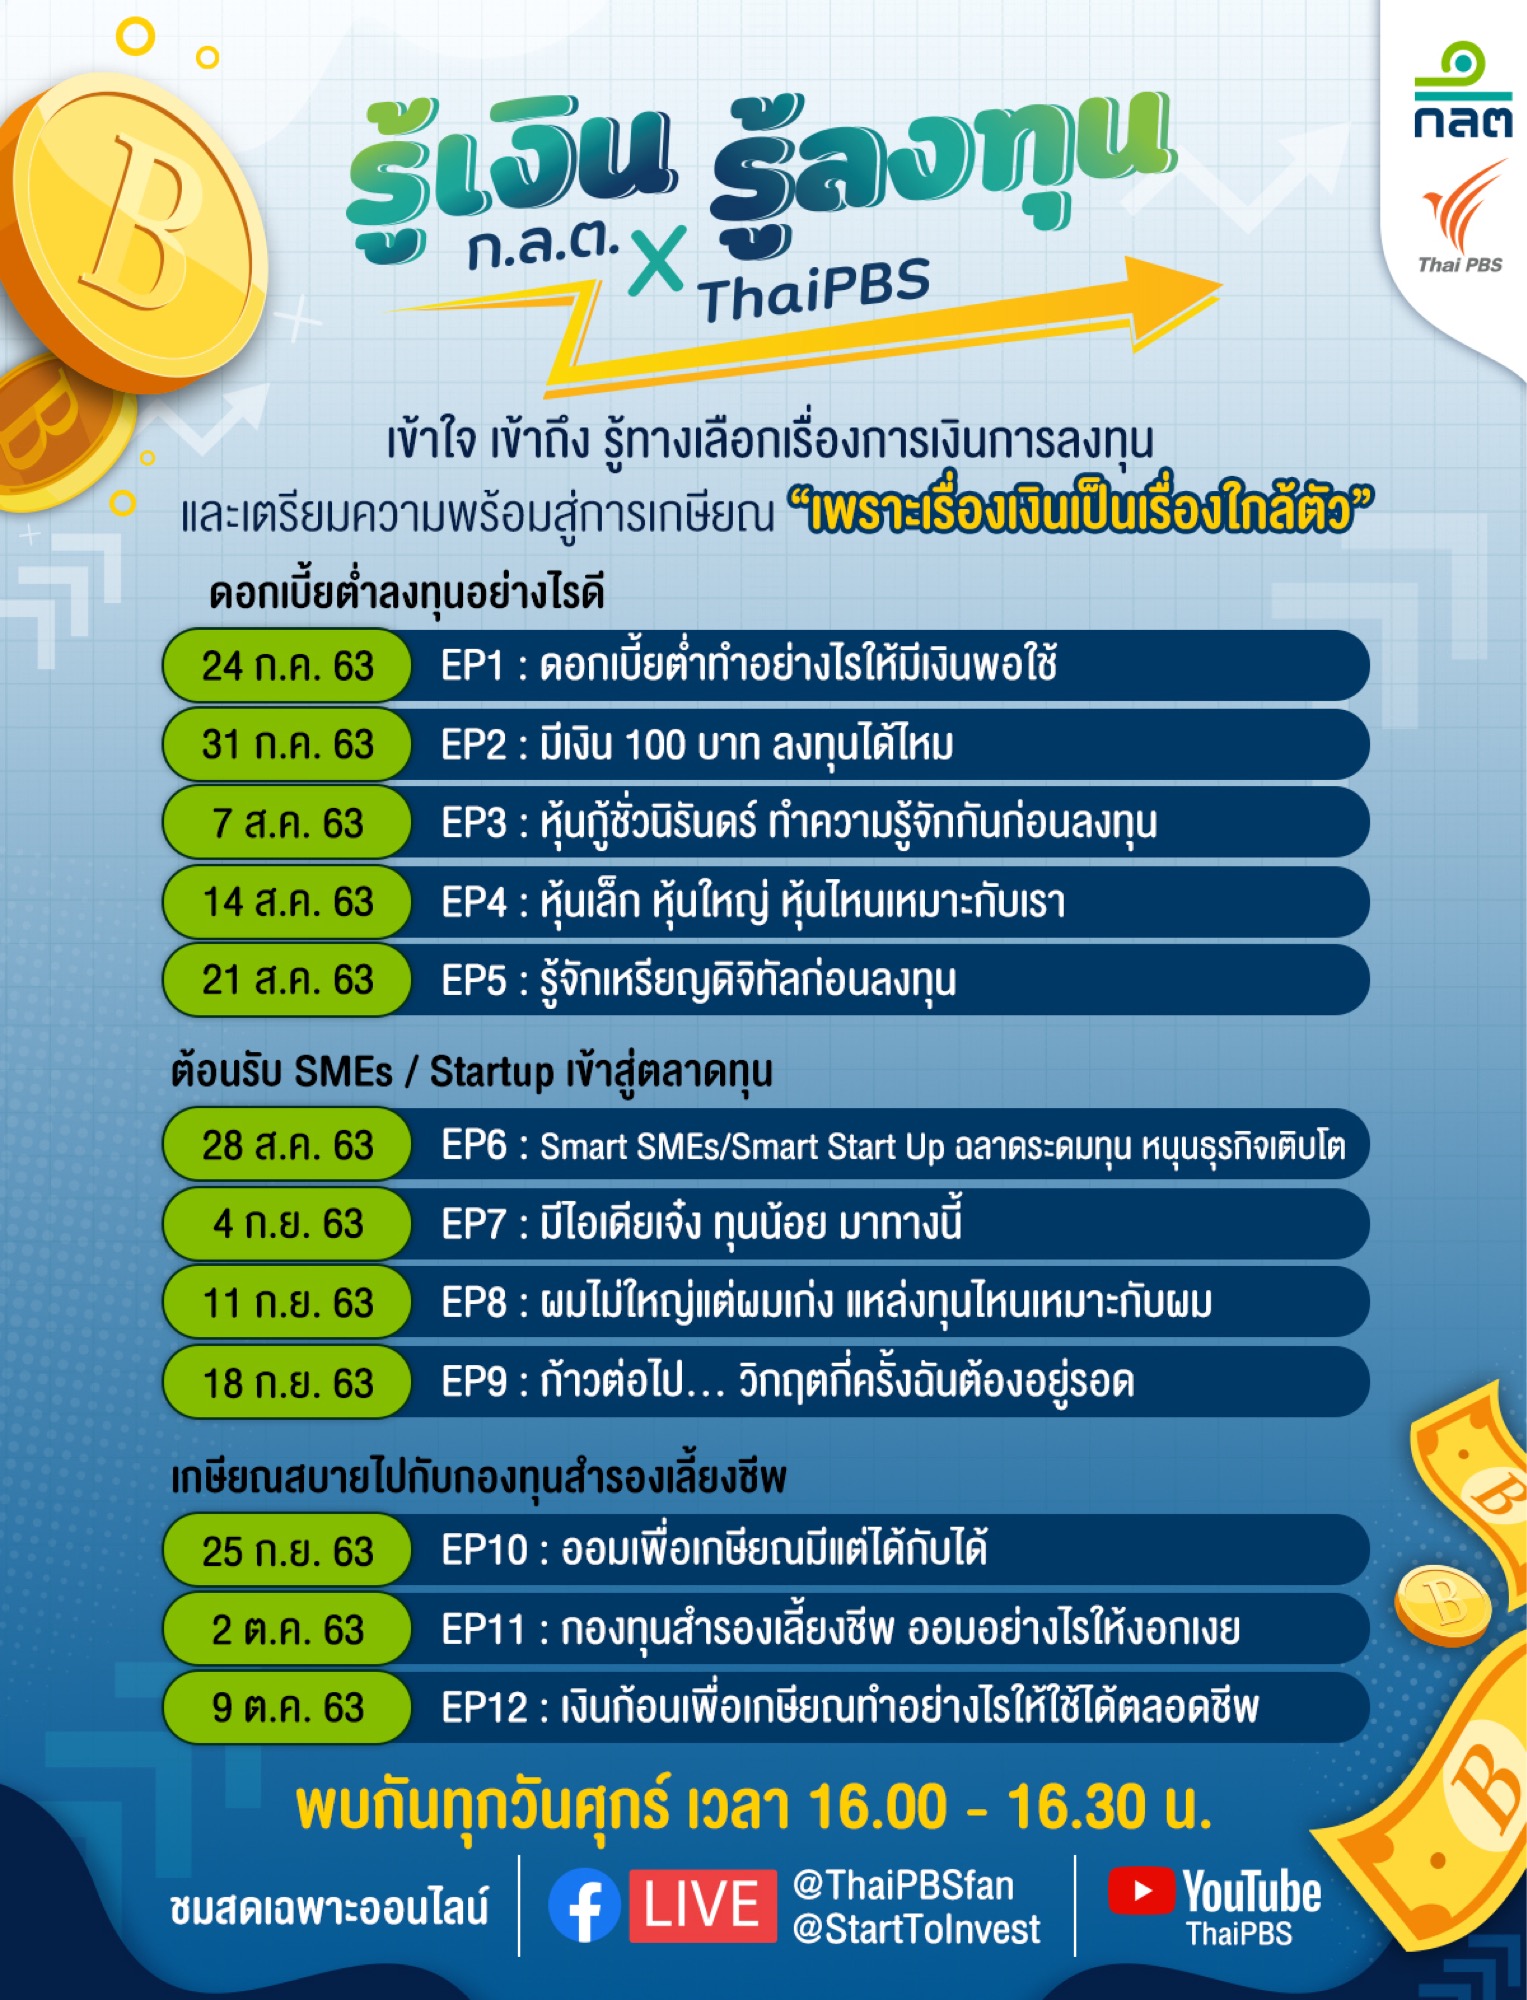 ก.ล.ต. จับมือไทยพีบีเอส ผลิตรายการสด “รู้เงิน รู้ลงทุน” 12 ตอนผ่านสื่อสังคมออนไลน์ ให้ความรู้ด้านการเงินการลงทุน